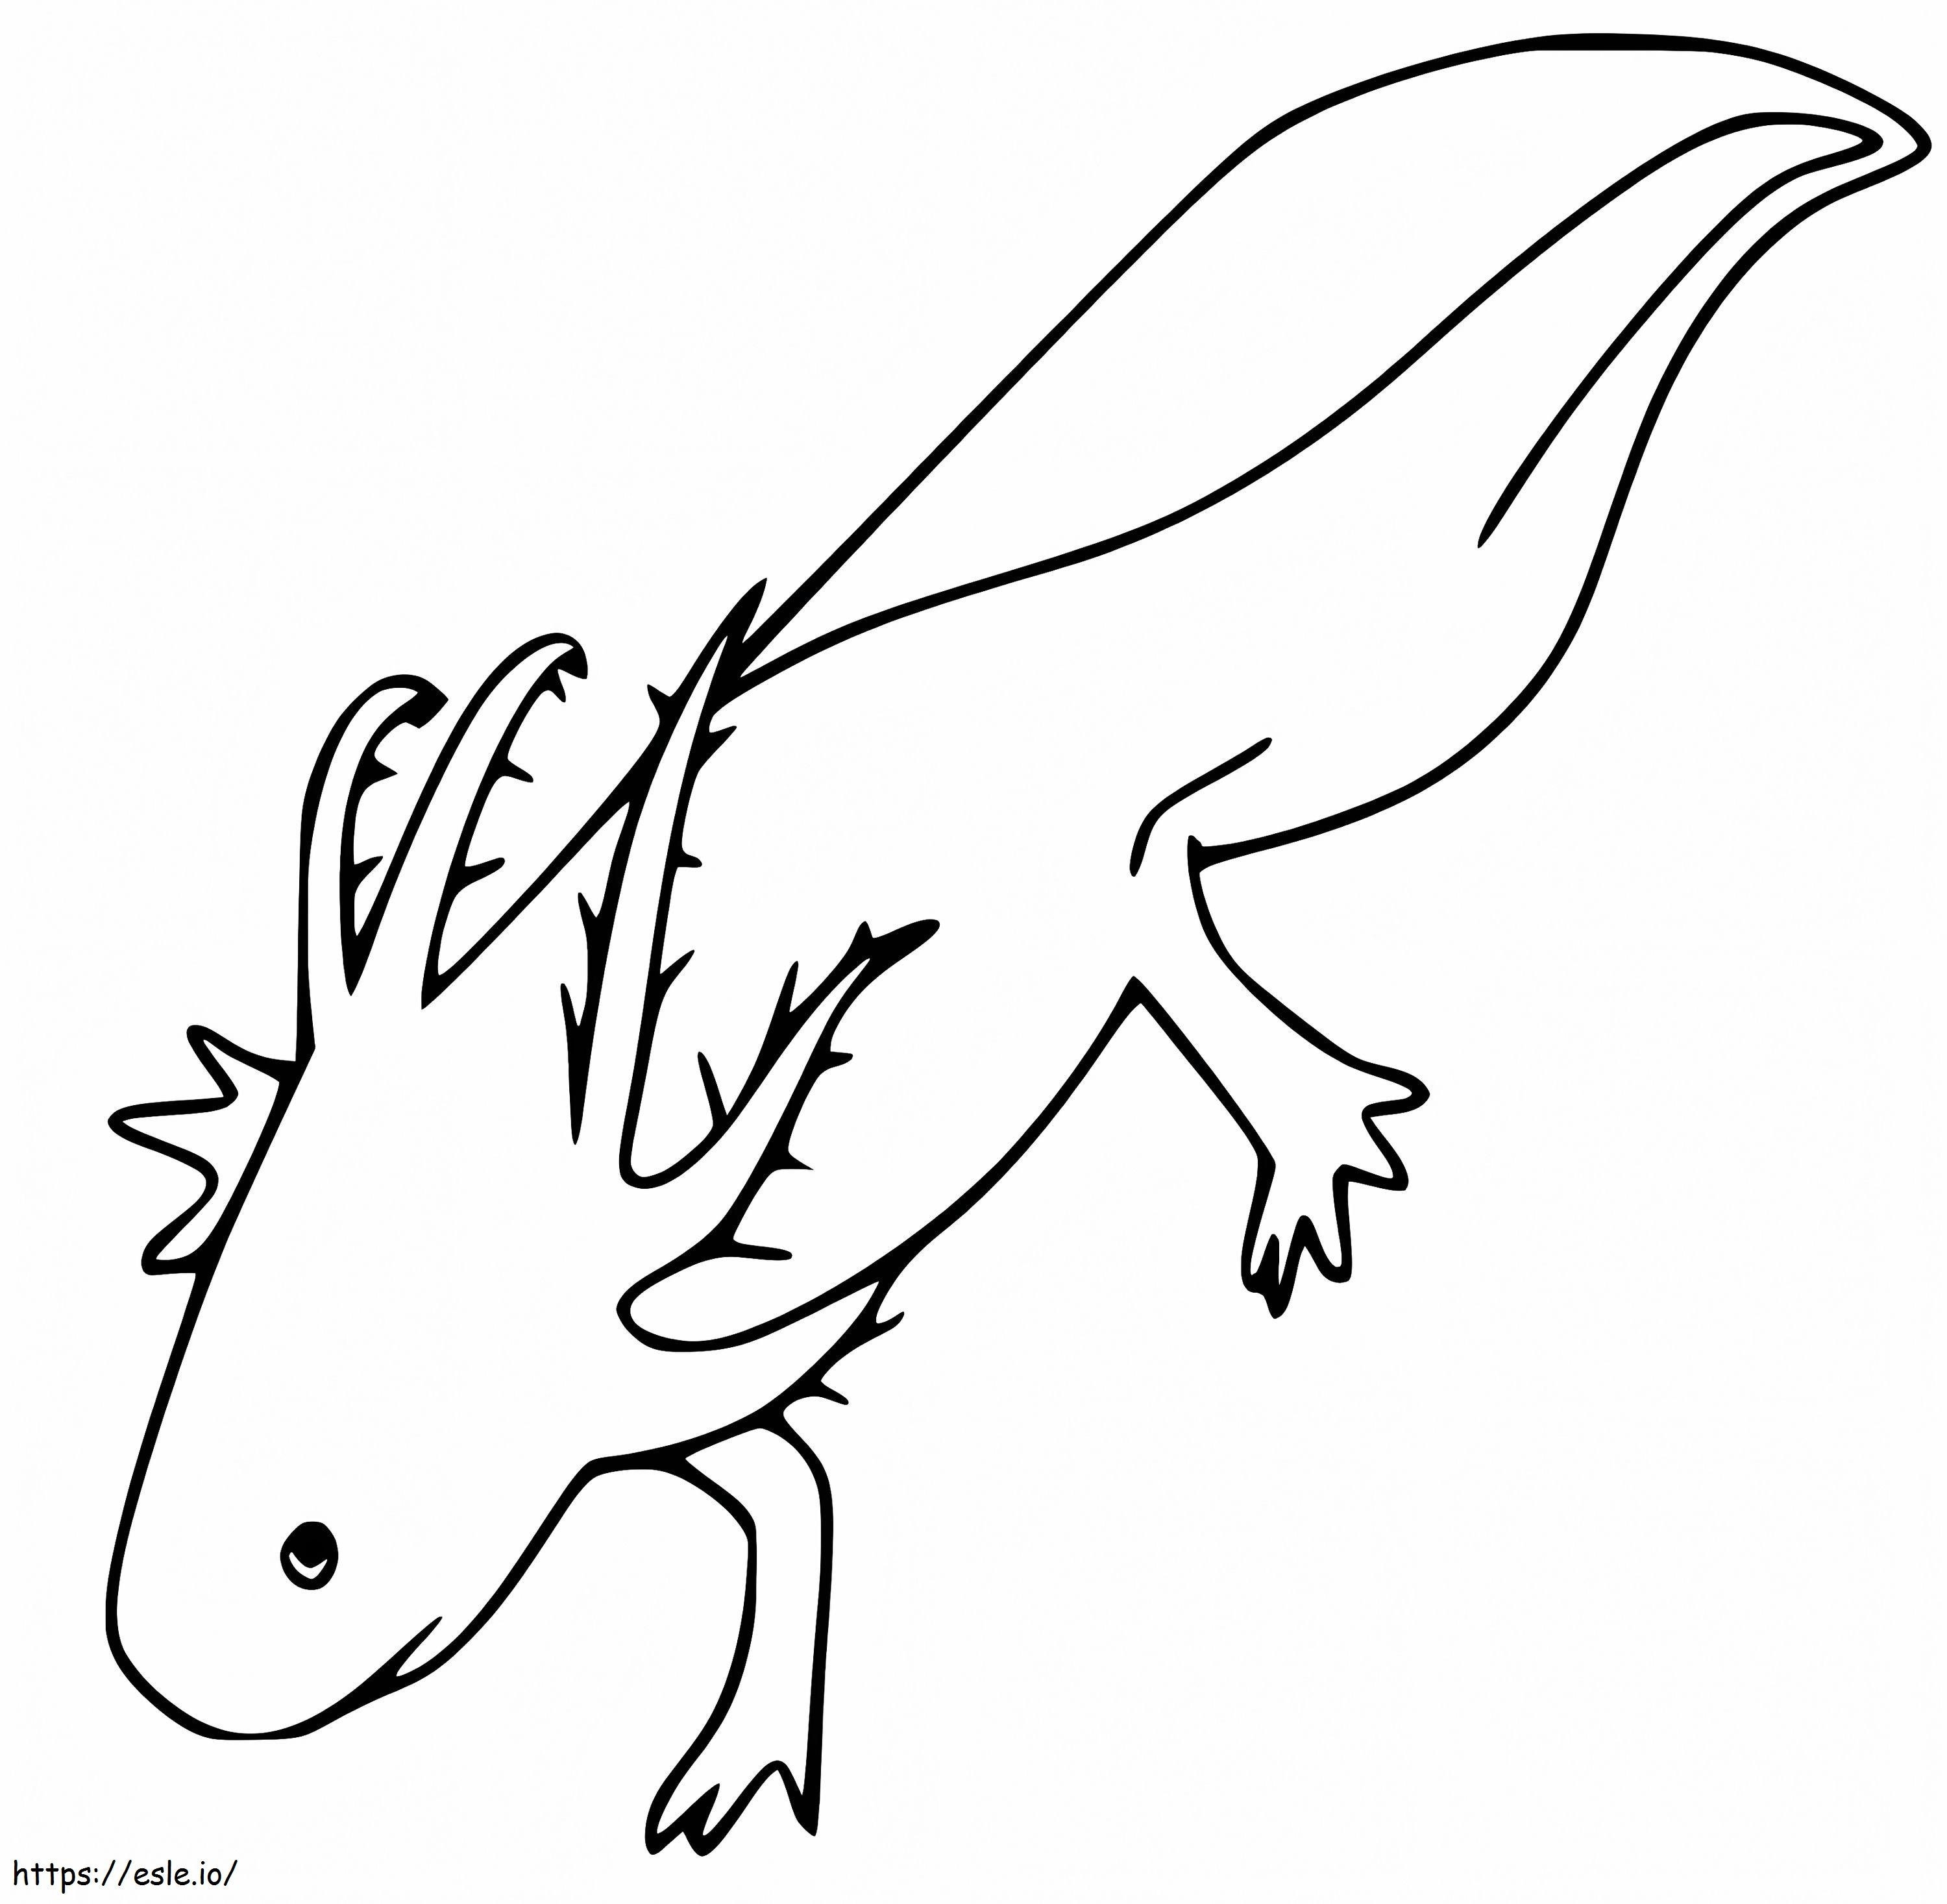 Axolotl sederhana Gambar Mewarnai